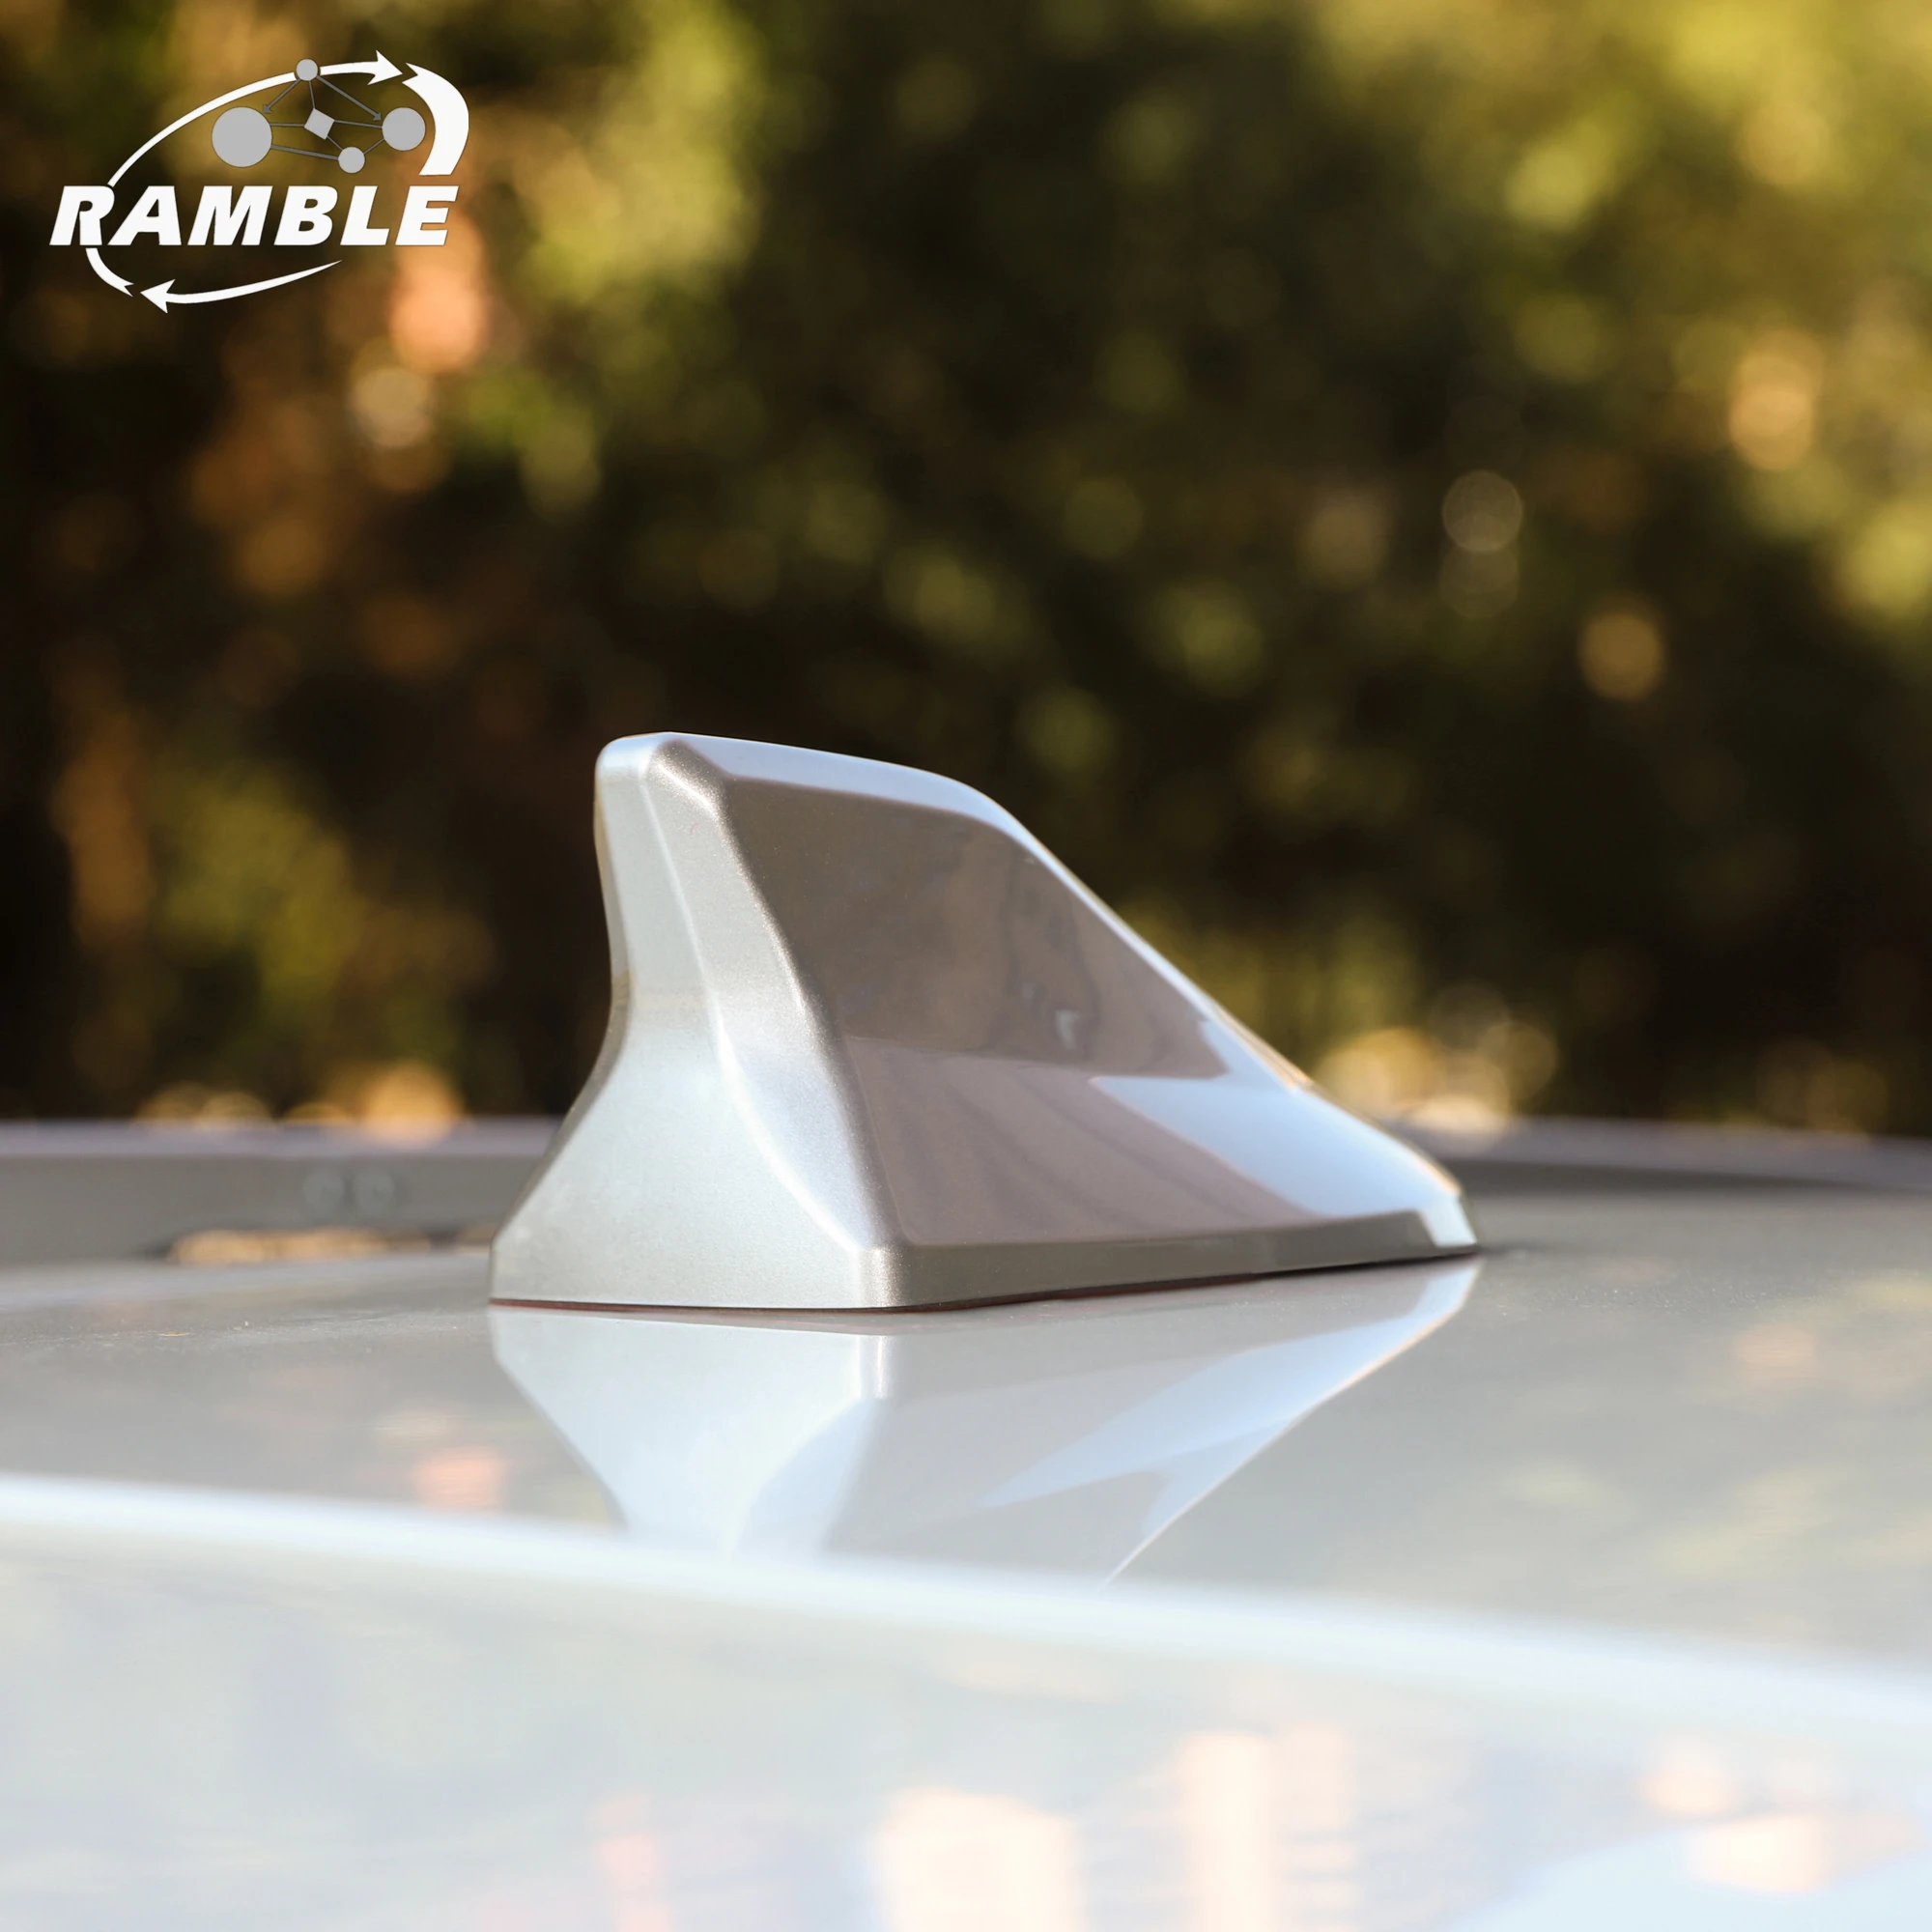 

Ramble AM FM Усилитель сигнала автомобиля радио антенна "Акулий Плавник" украшение на крышу автомобиля Авто боковой Замена для Fiat Tipo